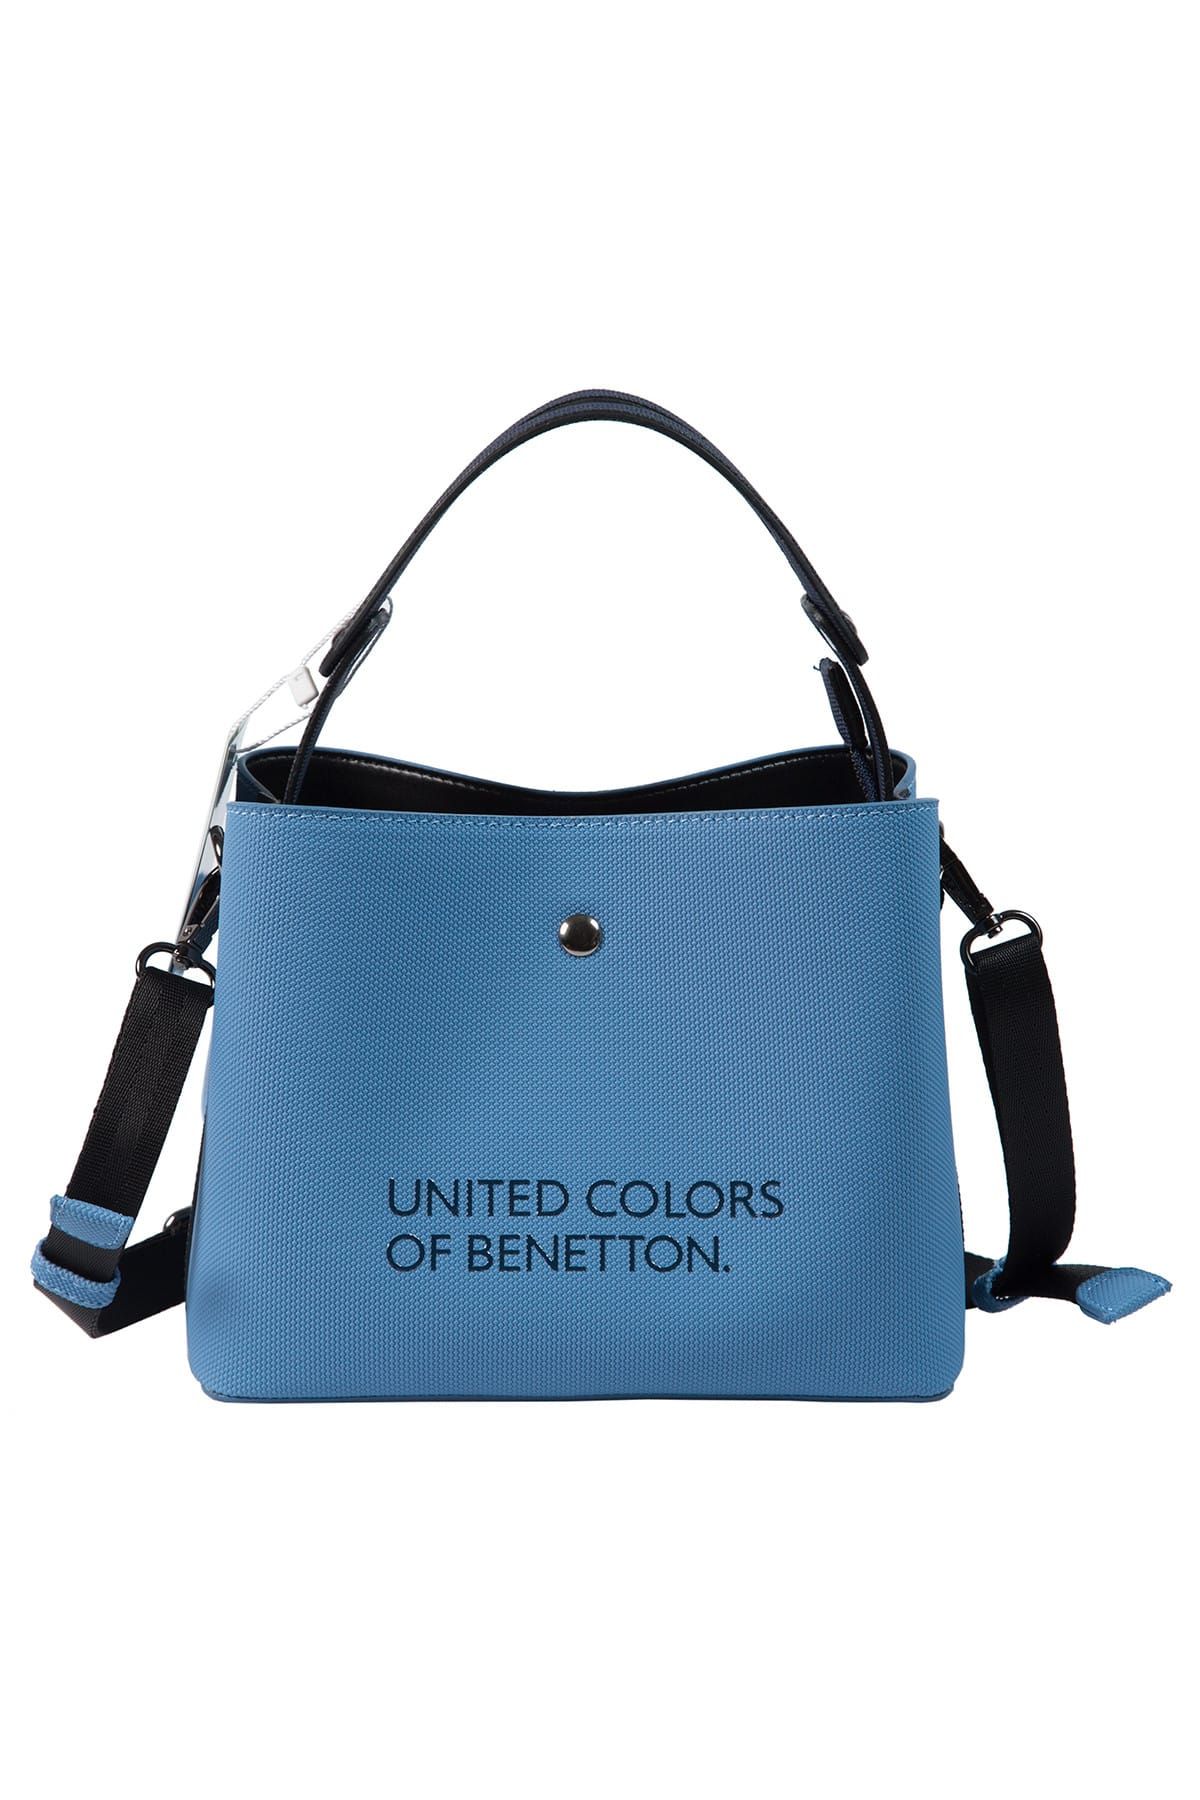 United Colors of Benetton Mavi - Lacivert Kadın El Çantası BNT67